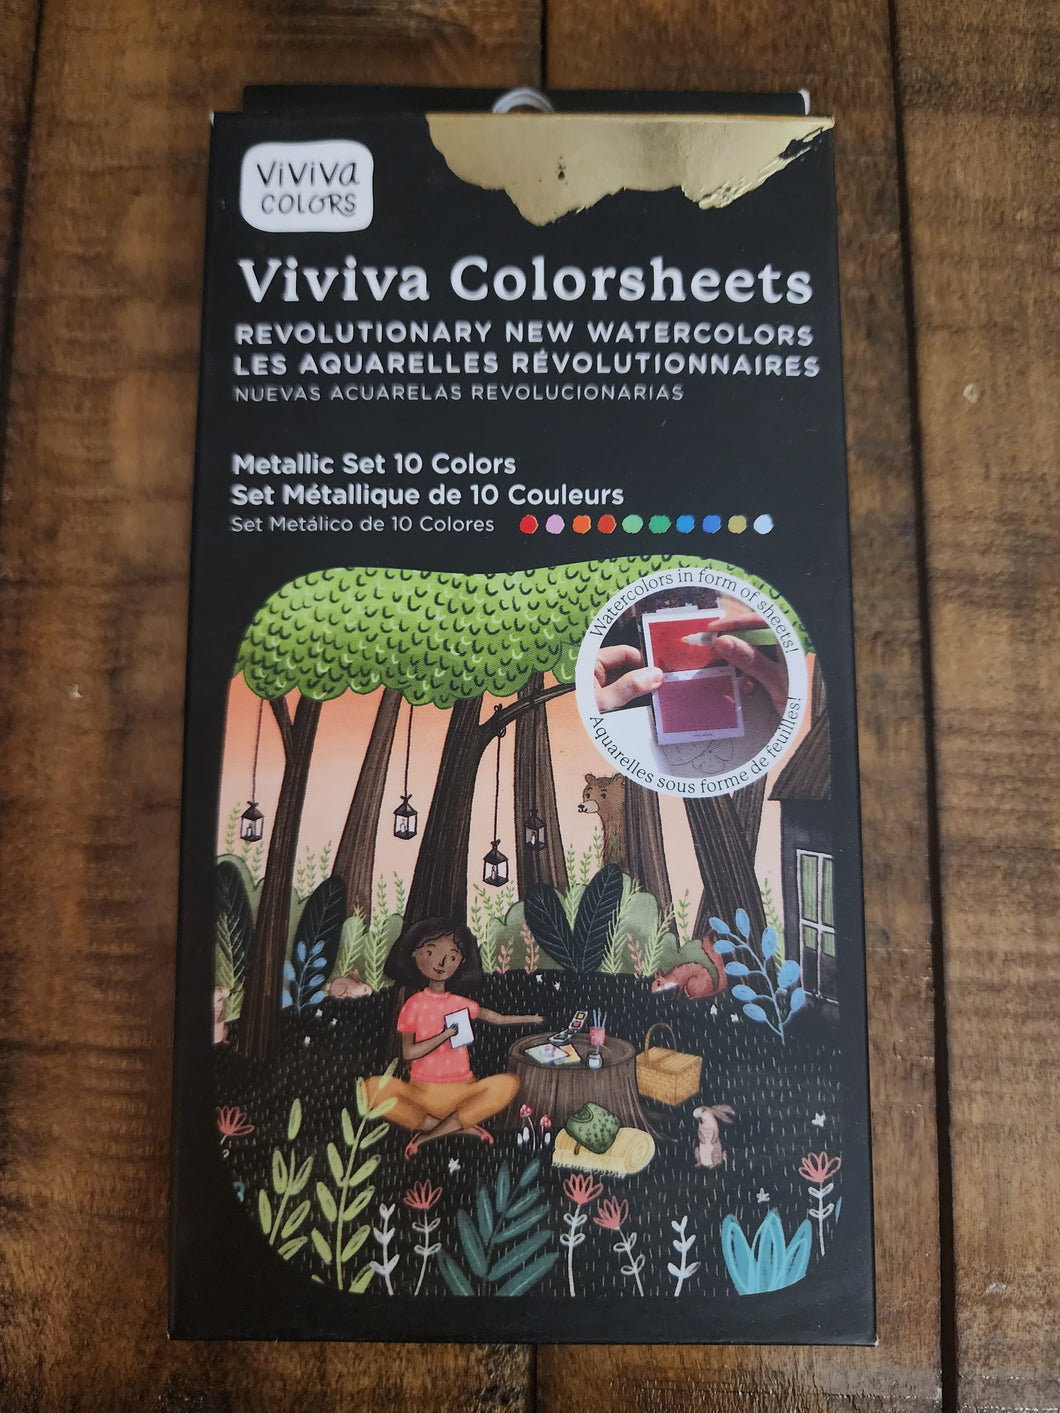 Watercolors - Metallic Set - Viviva Colorsheets (Viviva Colors)